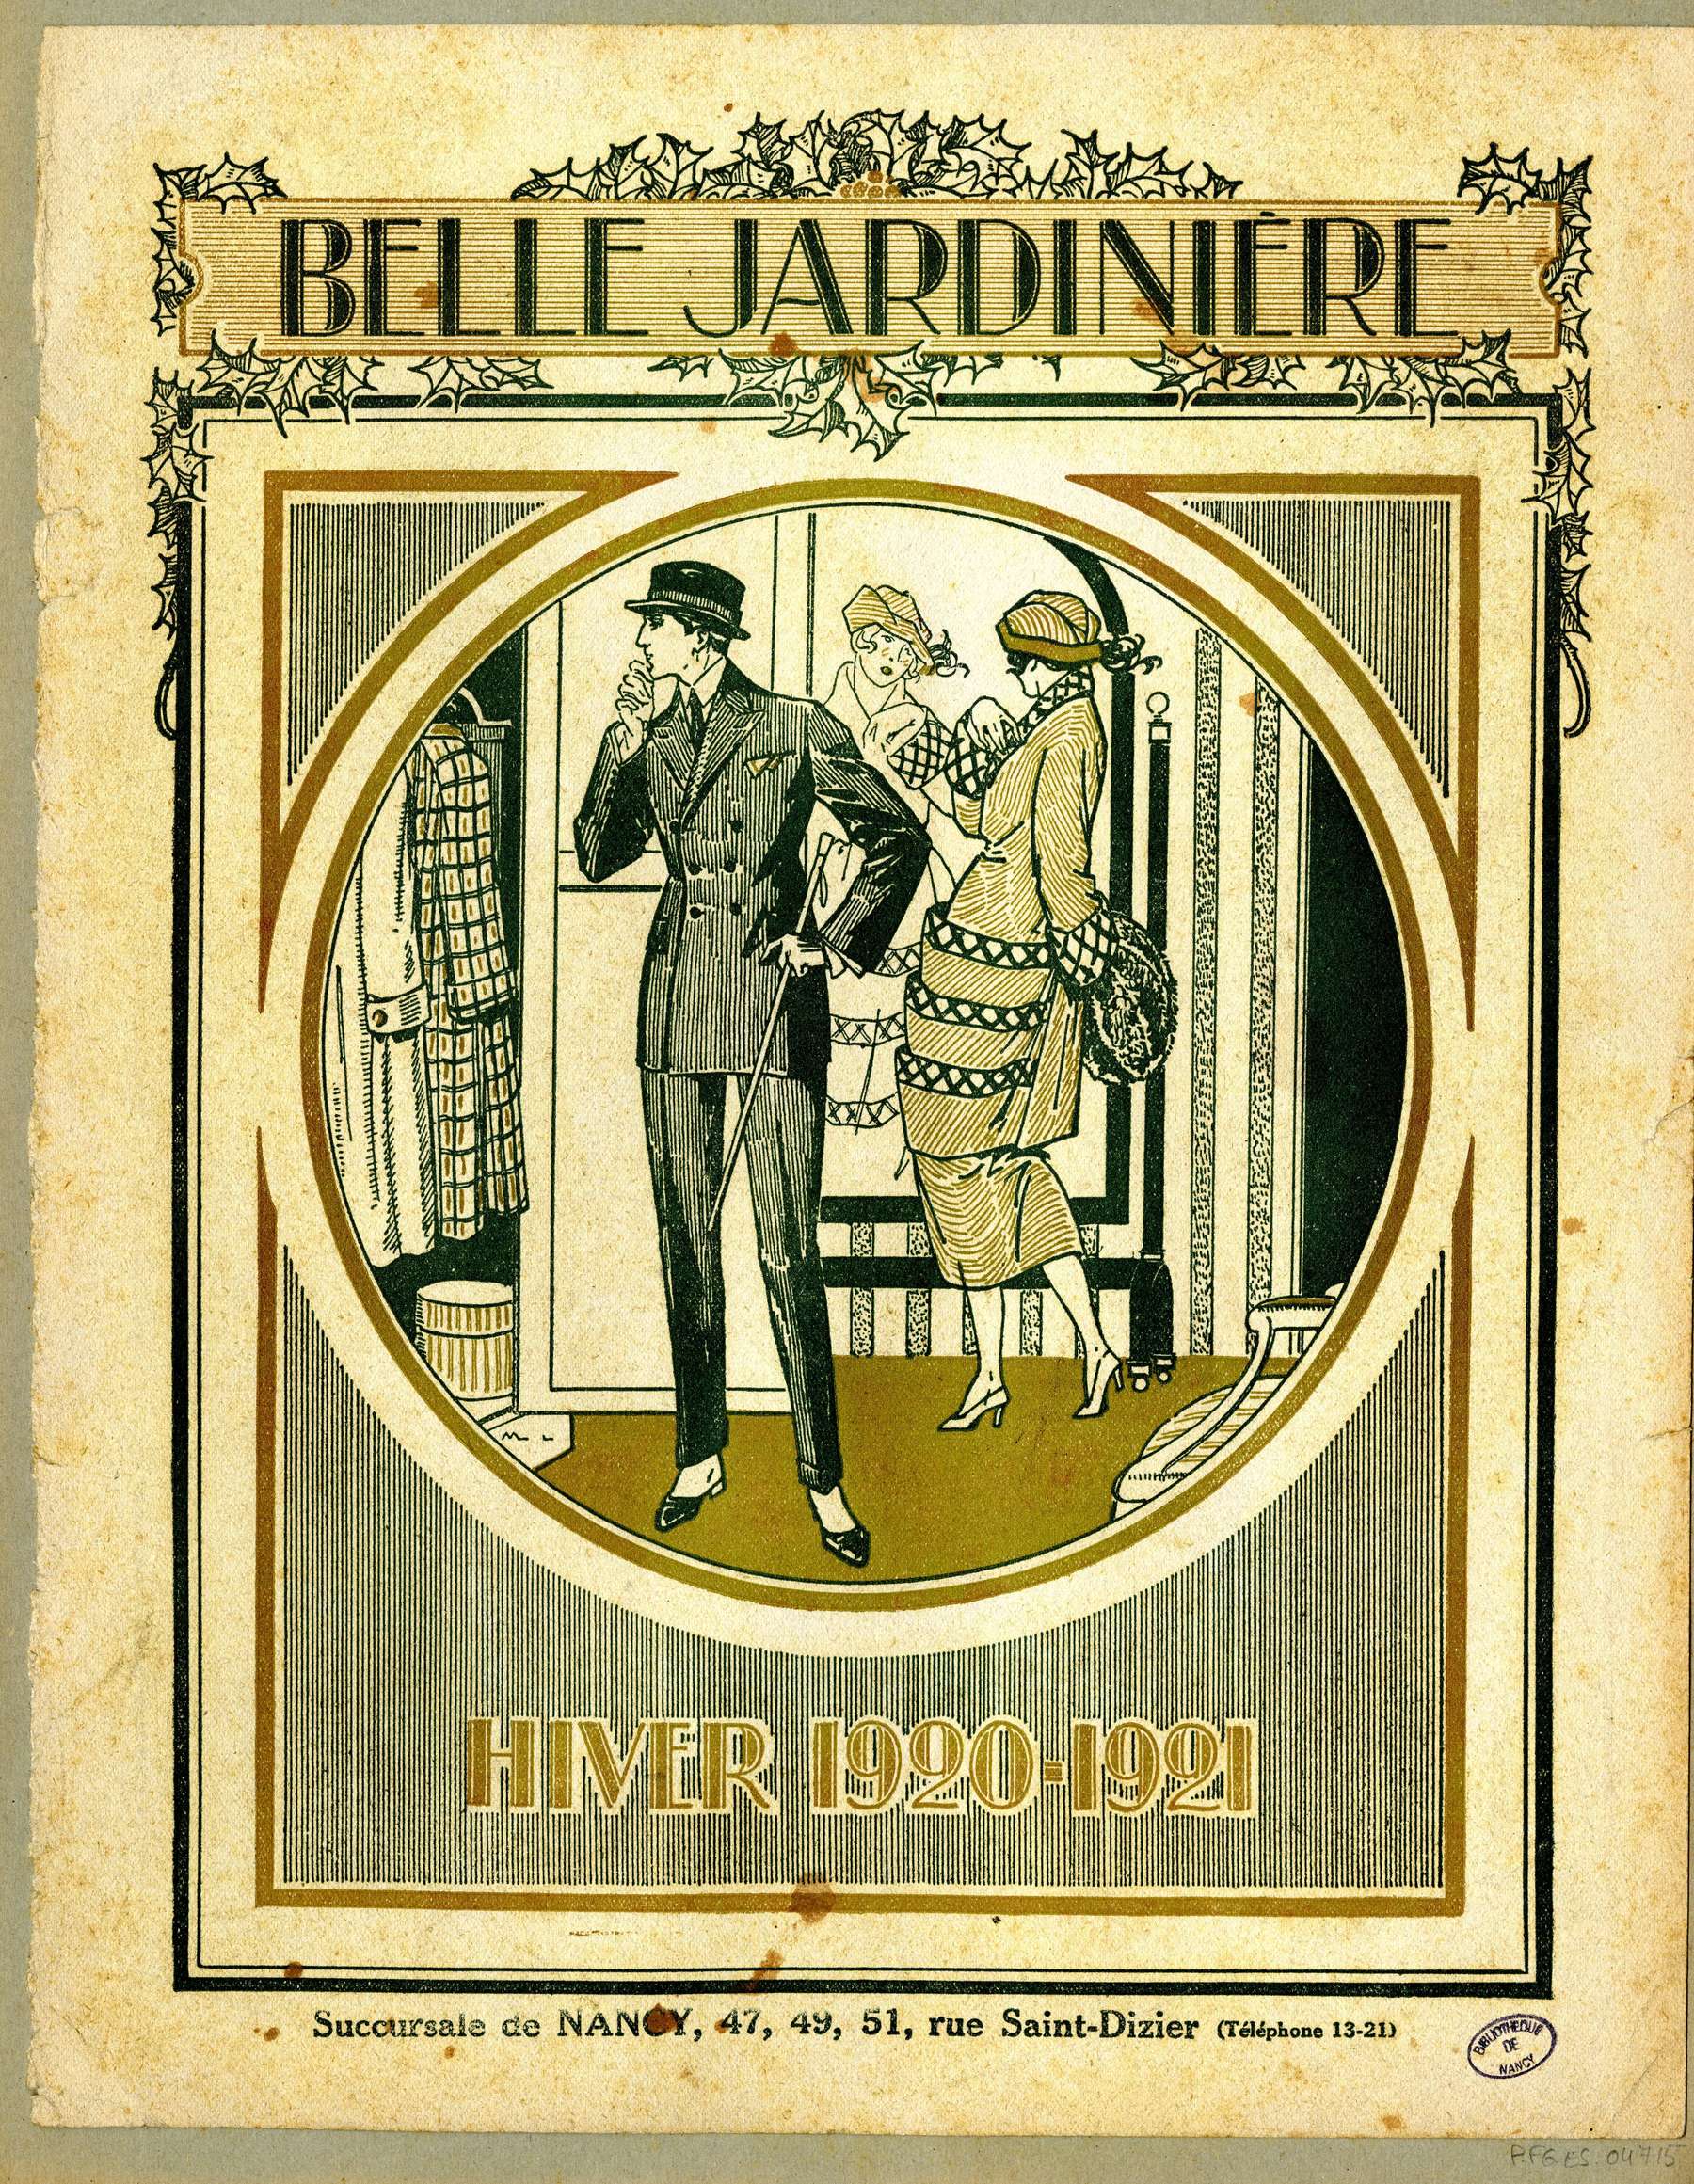 Contenu du Hiver 1920-1921